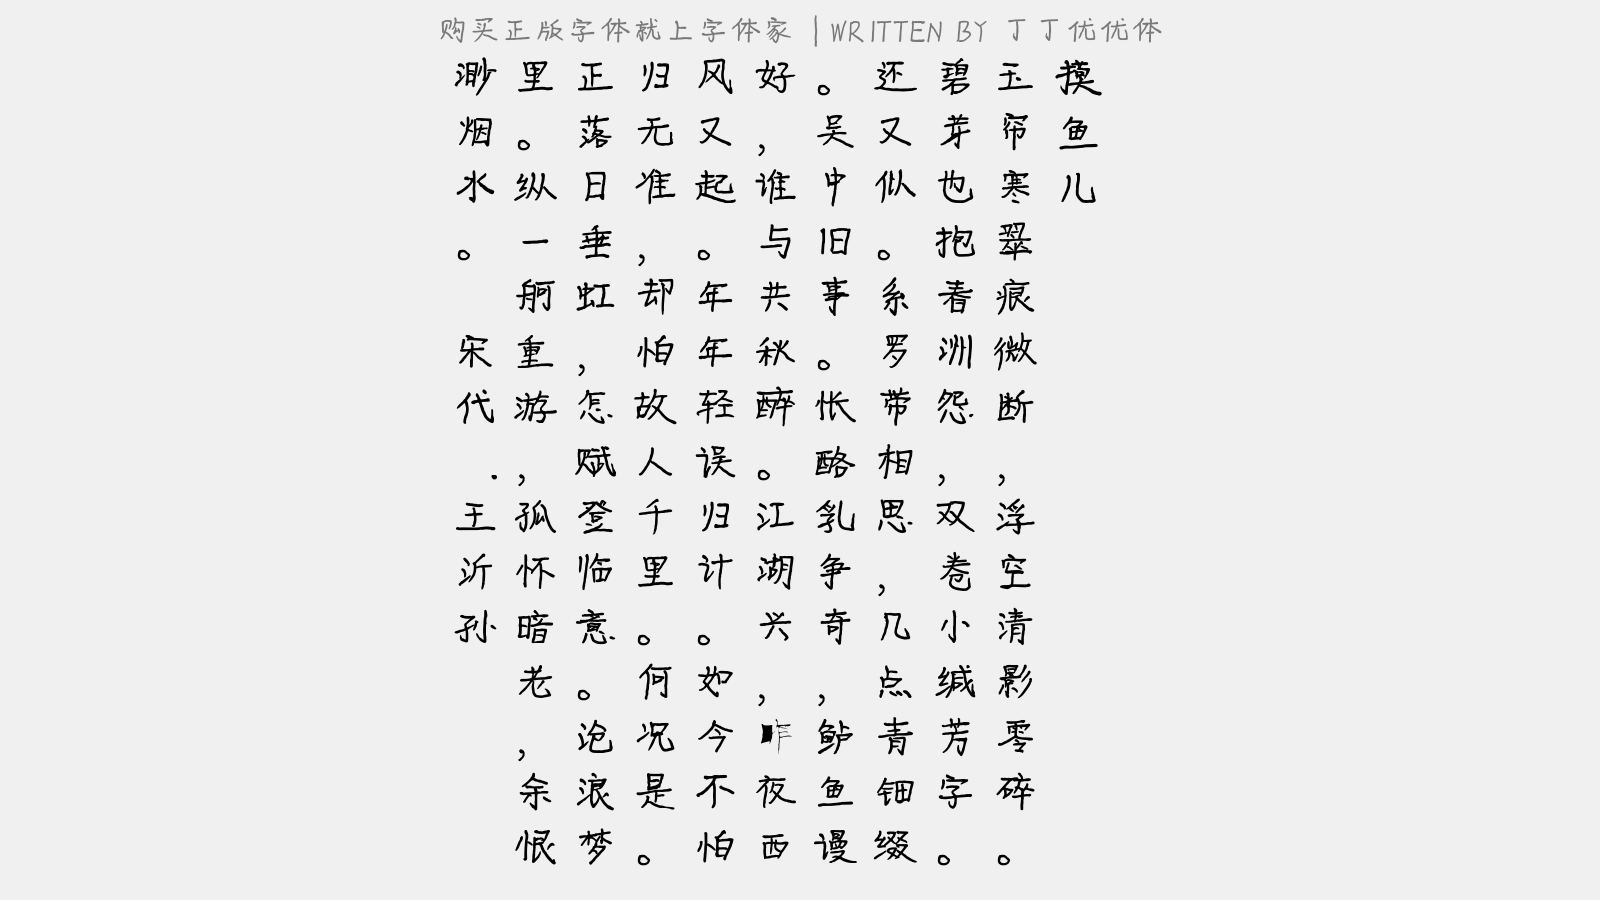 丁丁优优体免费字体下载 - 中文字体免费下载尽在字体家